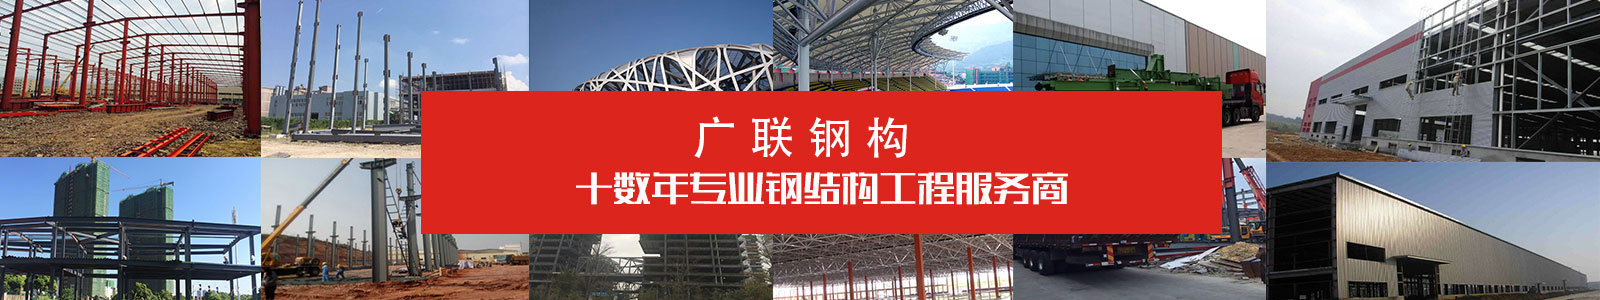 湖南钢结构领导品牌-广联钢结构